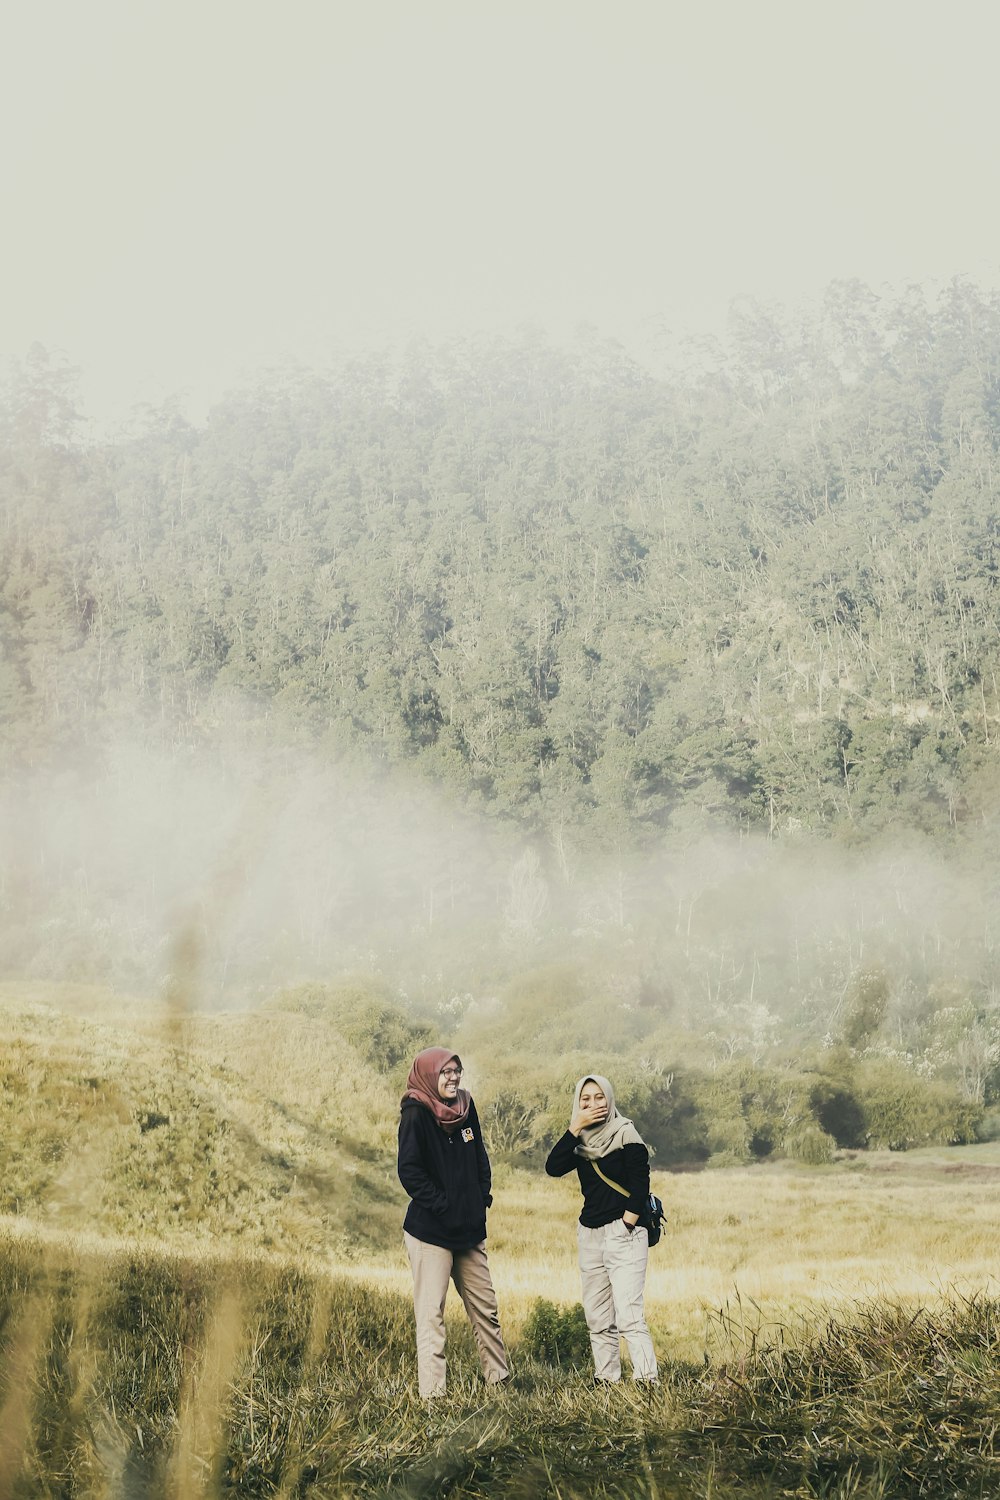 昼間、霧に覆われた緑の木々のそばの茶色い野原に立つ3人の女性